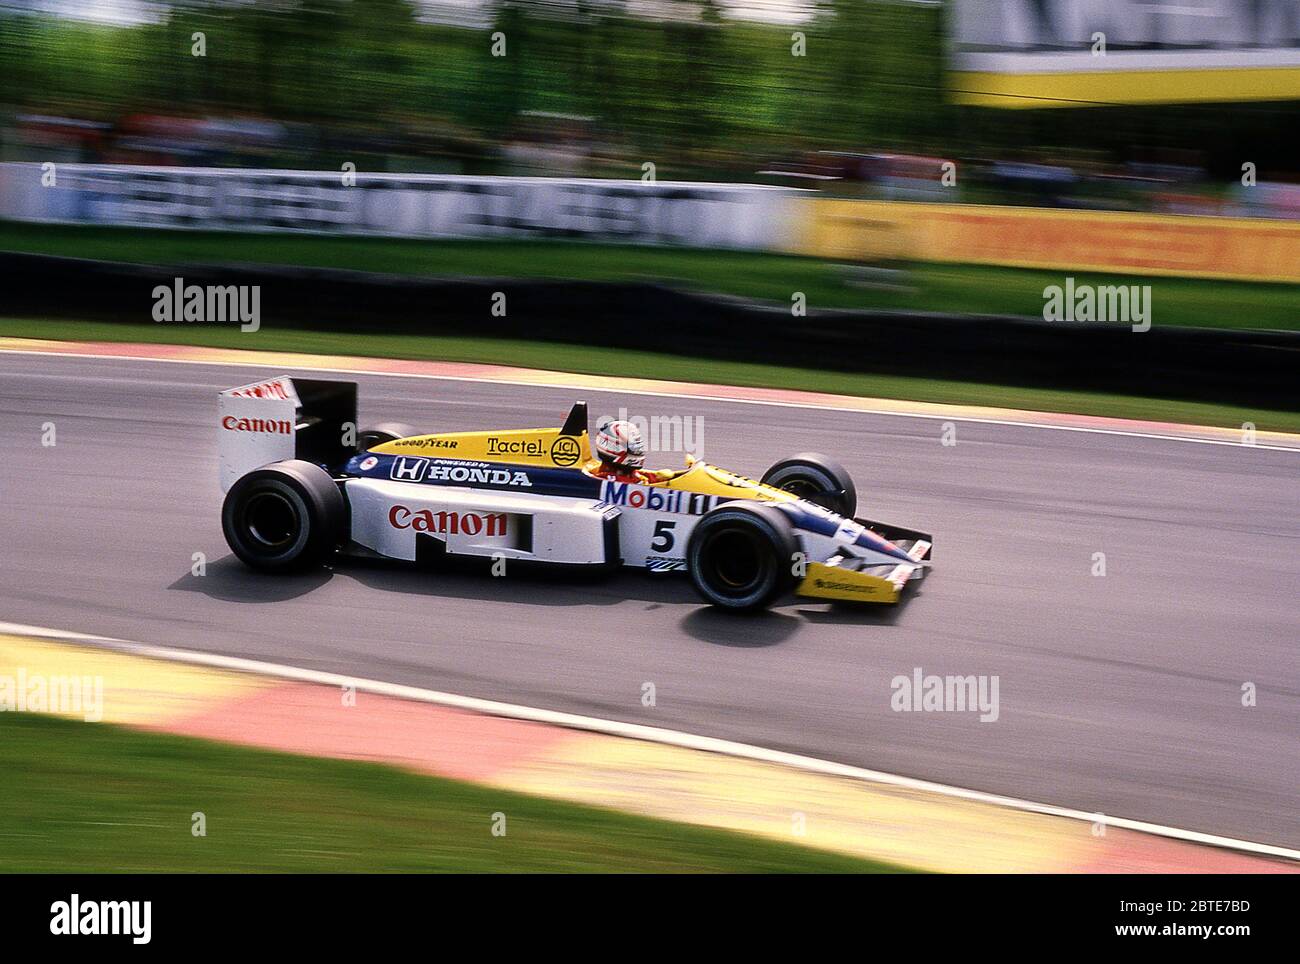 Nigel Mansell en su Williams F1 en el Gran Premio Británico 1986 en Brands Hatch UK Foto de stock